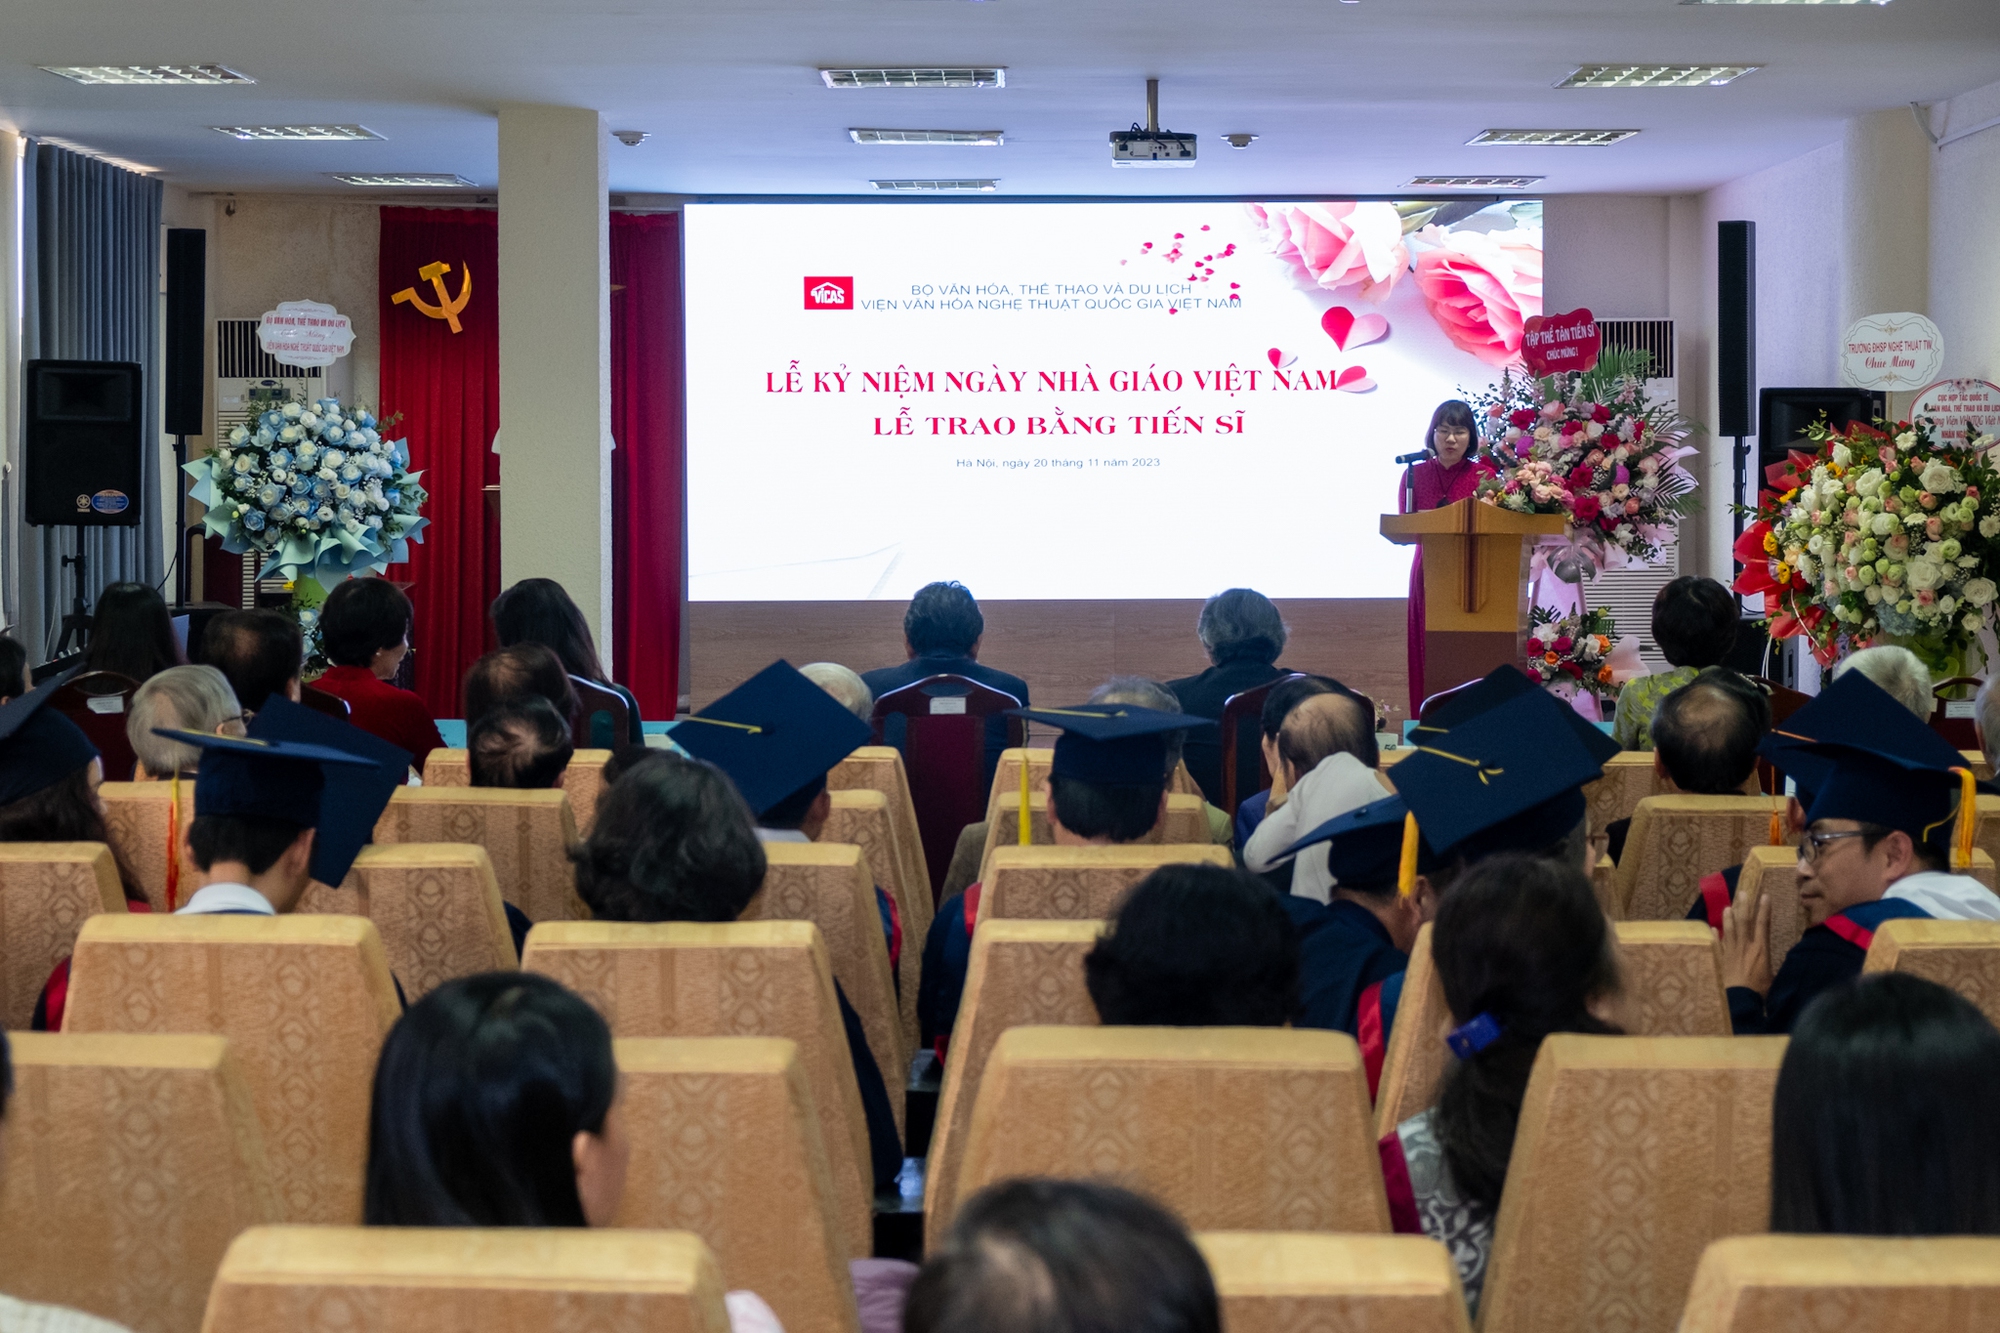 Thứ trưởng Hoàng Đạo Cương dự lễ kỷ niệm ngày nhà giáo Việt Nam và lễ trao bằng Tiến sĩ tại Viện Văn hóa Nghệ thuật quốc gia Việt Nam - Ảnh 3.